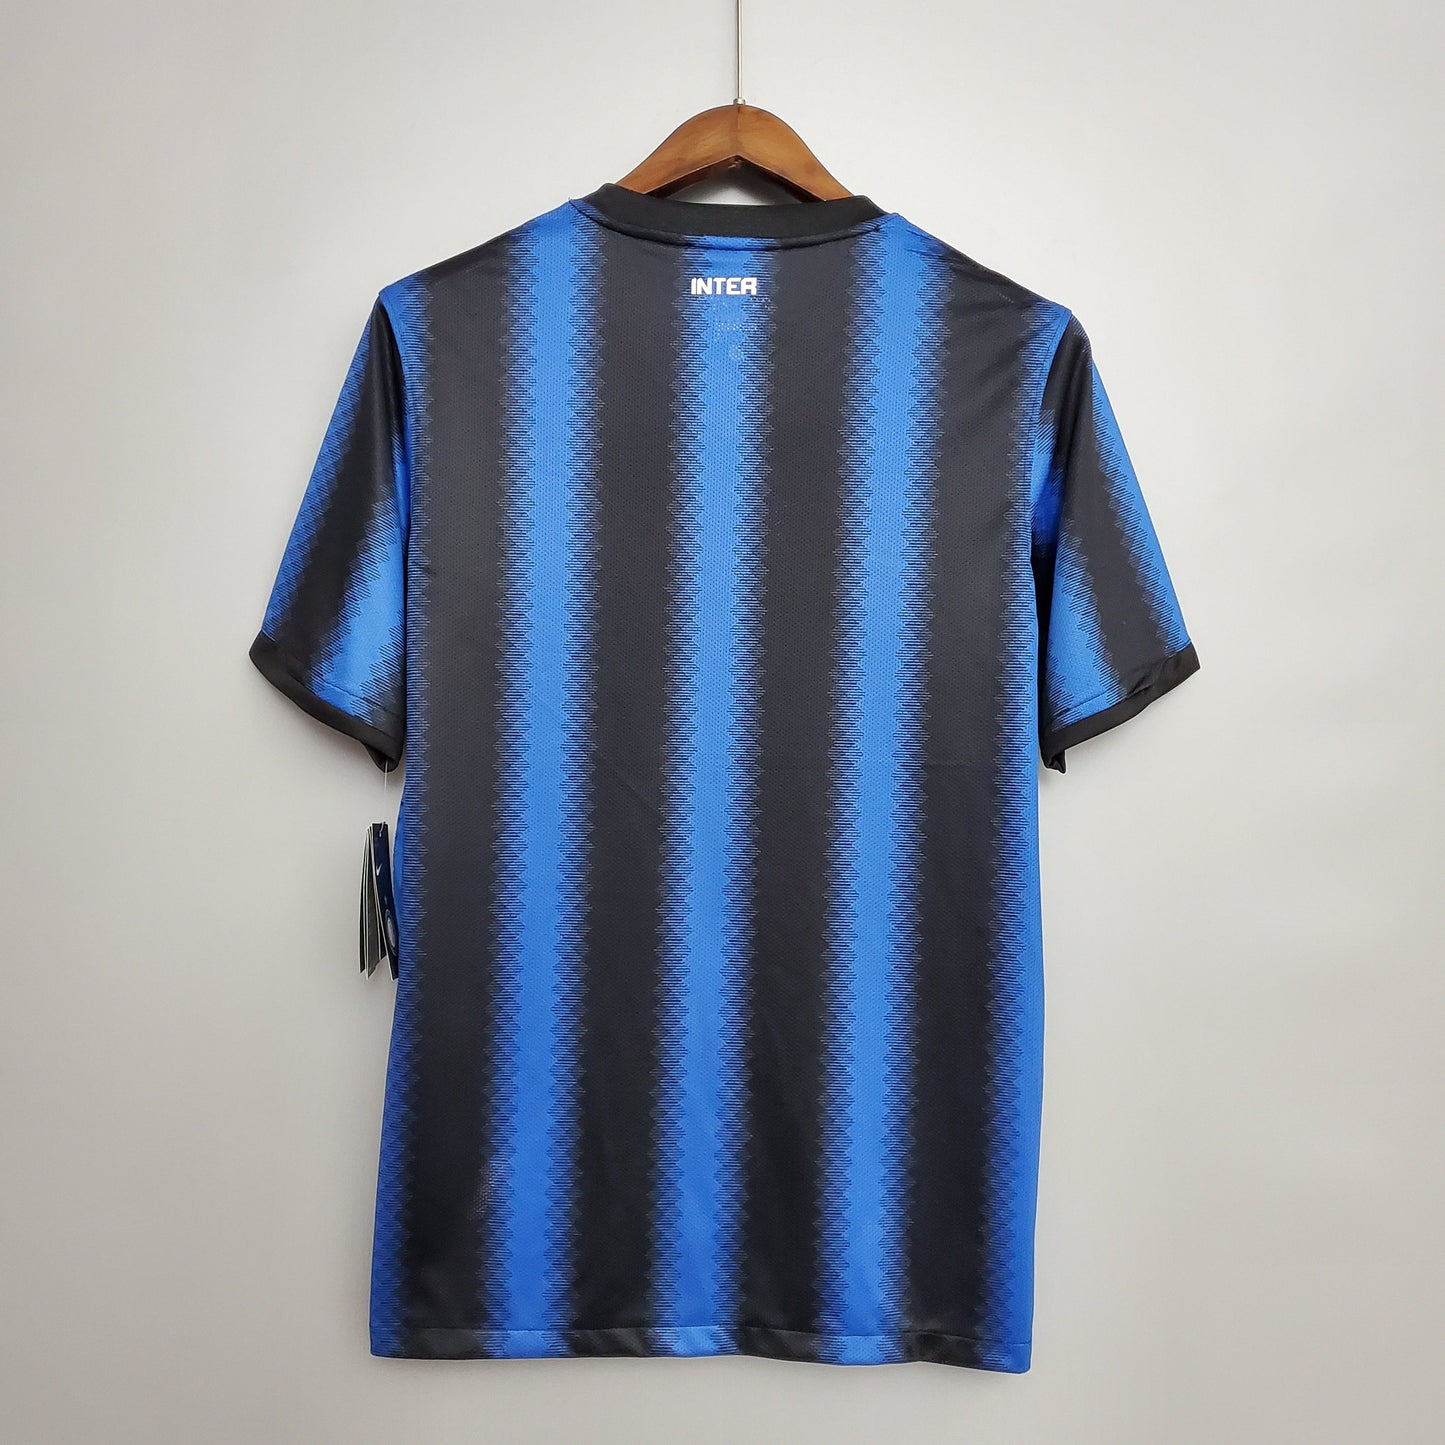 Retro Inter Milan Home Kit 10/11